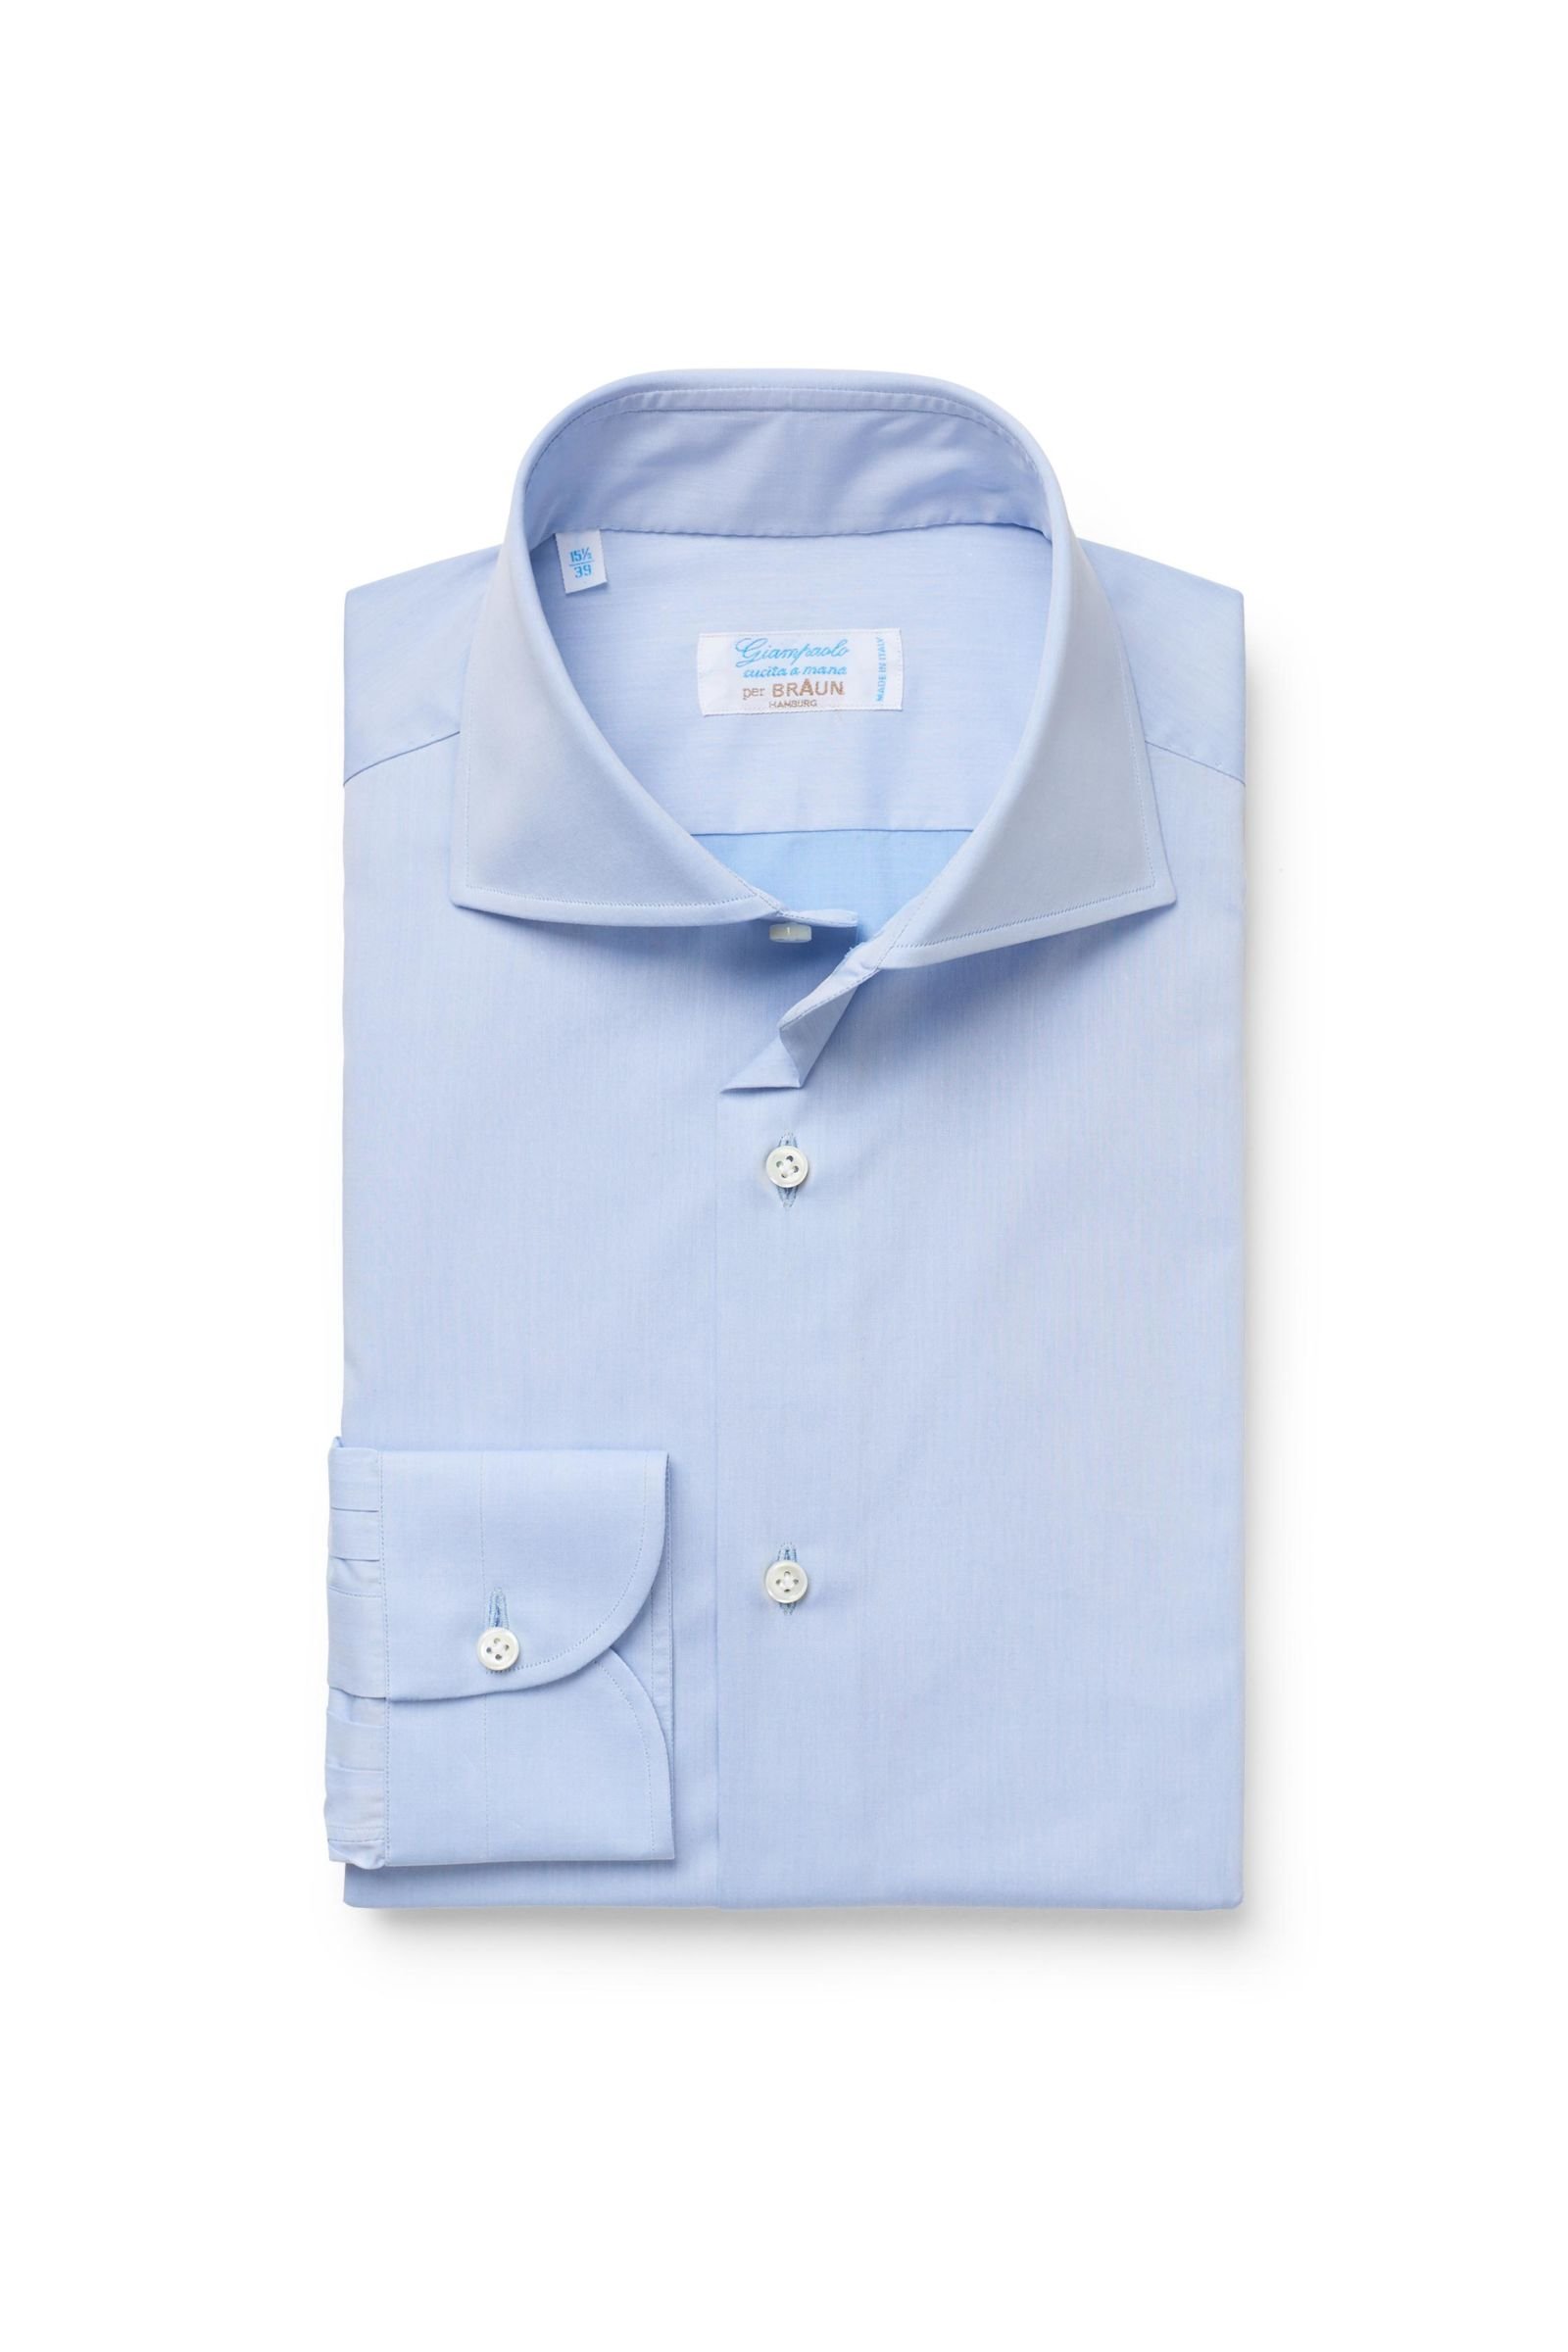 Business shirt shark collar pastel blue